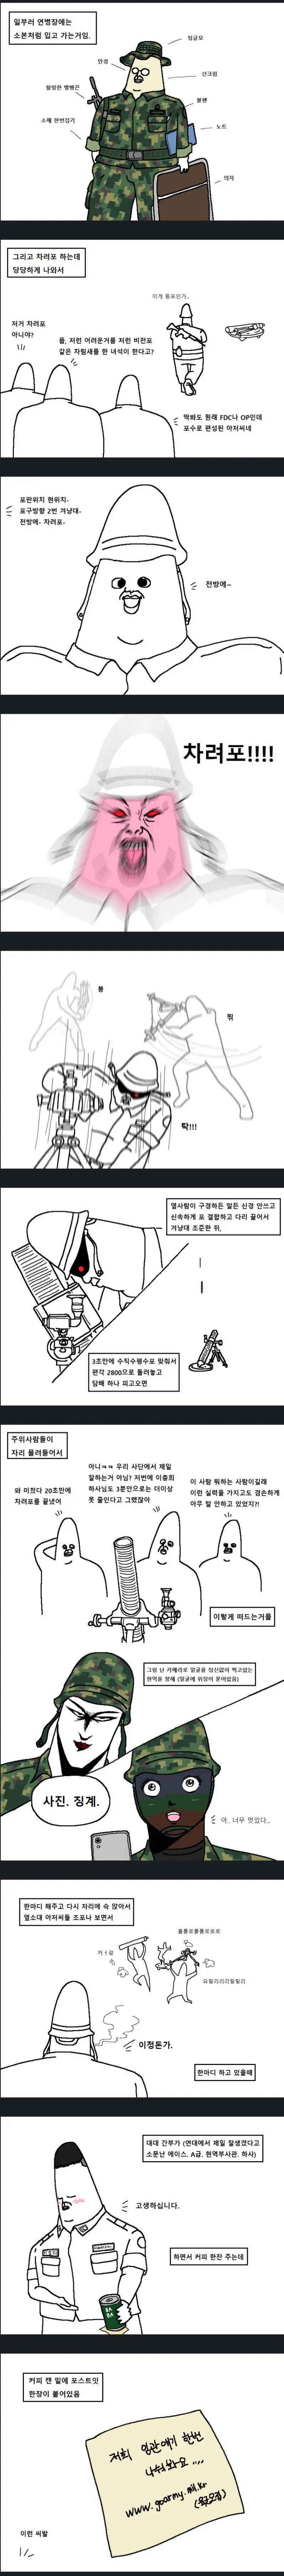 예비군 박격포로 주변 지리게 만든 만화....jpg | mbong.kr 엠봉